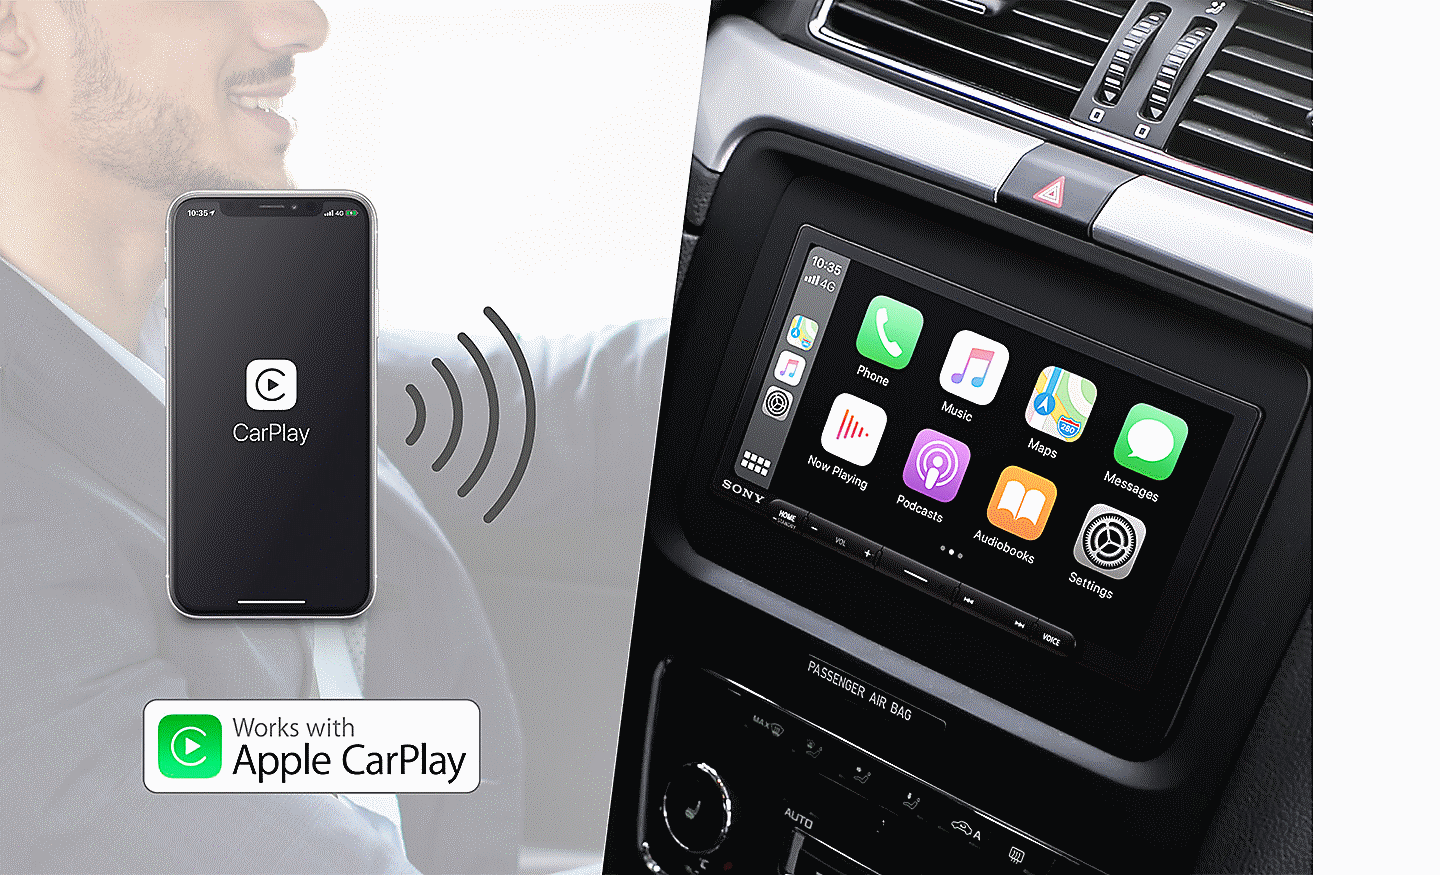 Kuva siitä, miten XAV-AX6050 voi muodostaa yhteyden Apple CarPlayn kanssa